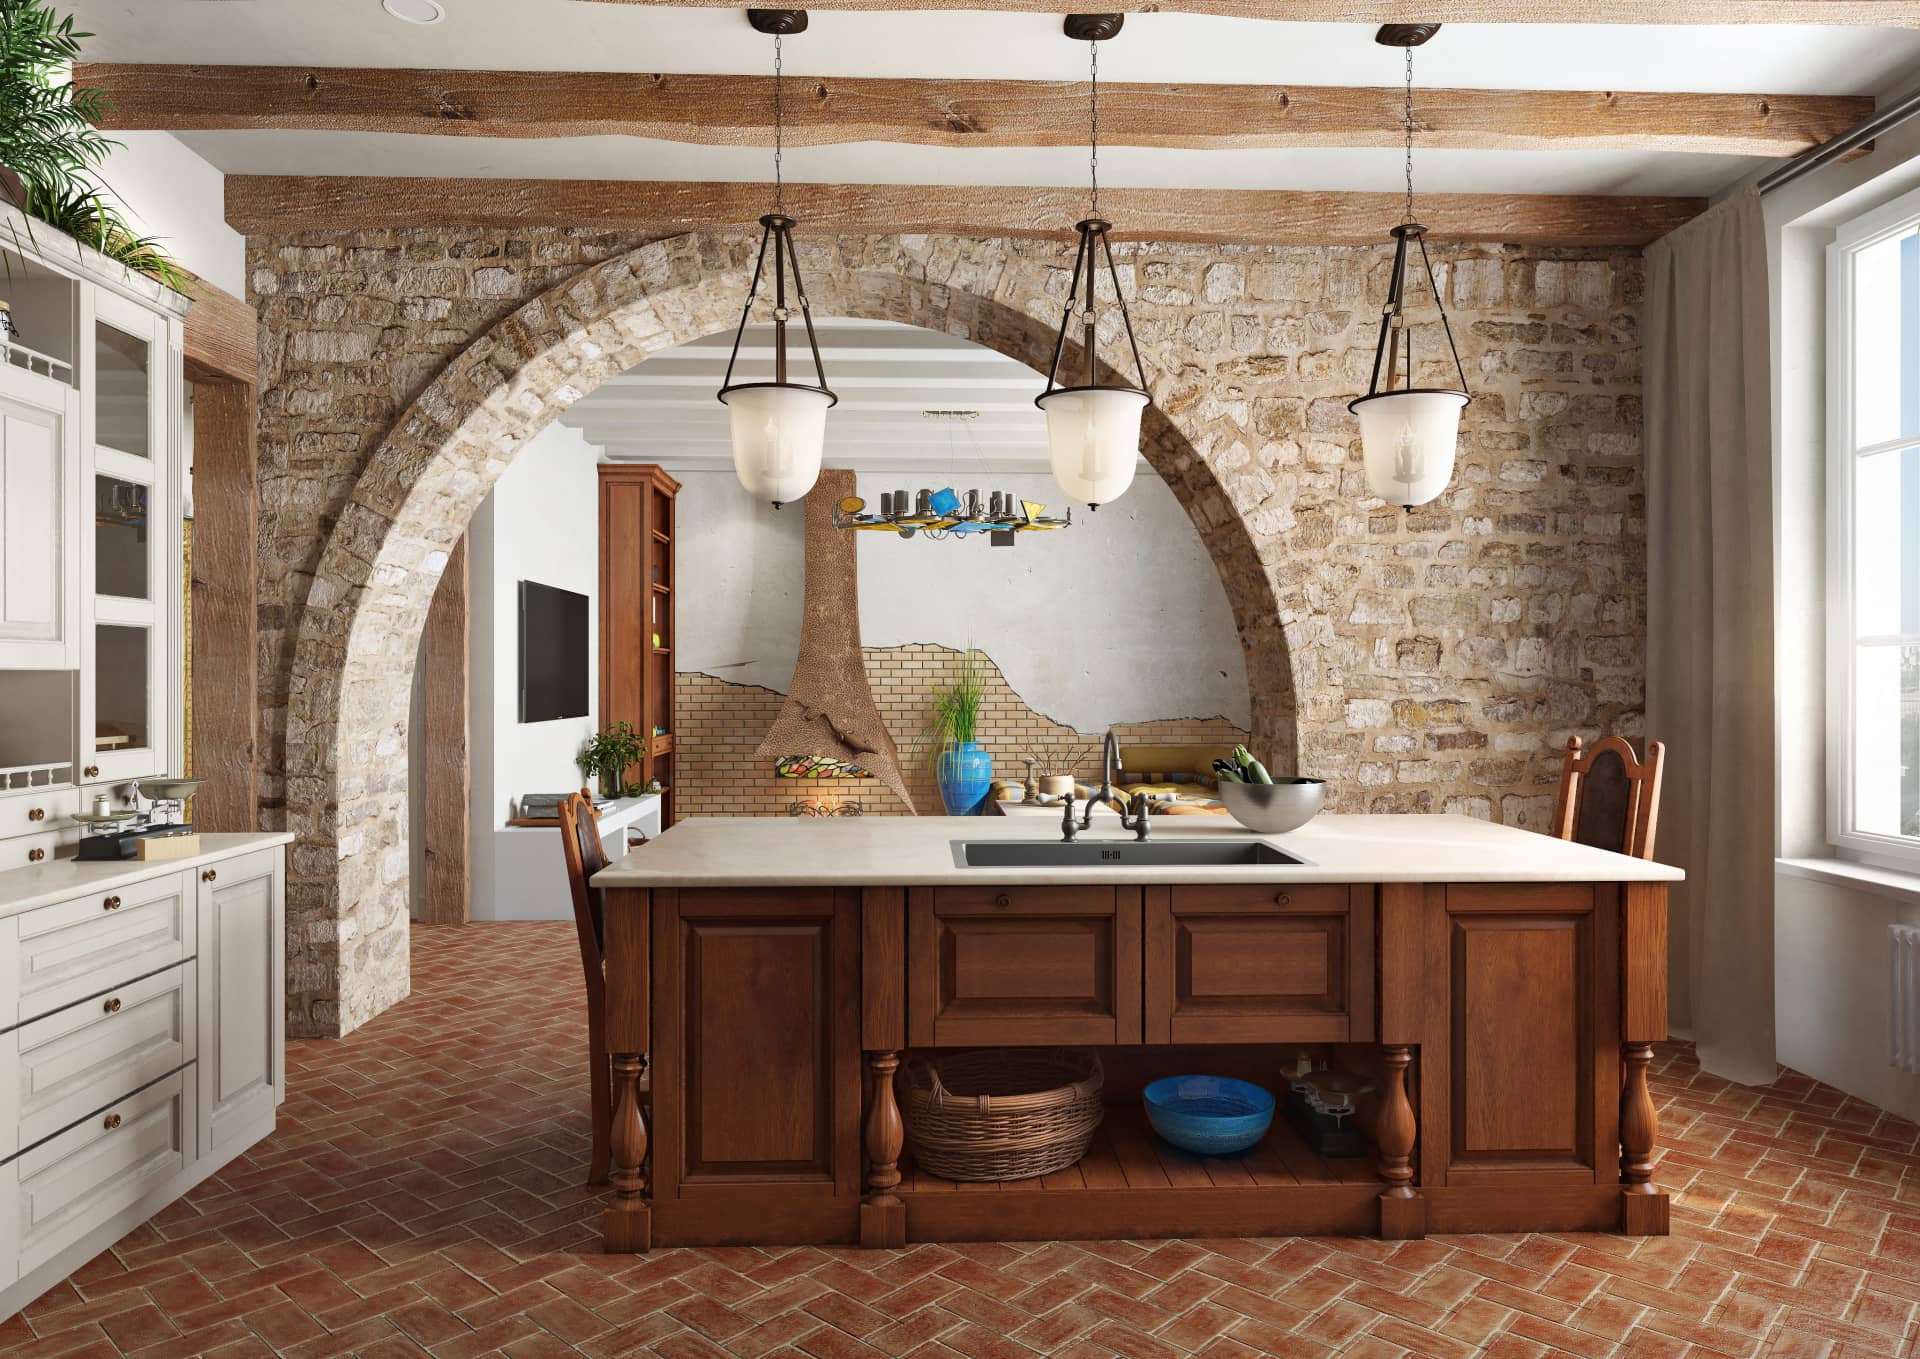 Островок в кухне сделан из вишневой древесины